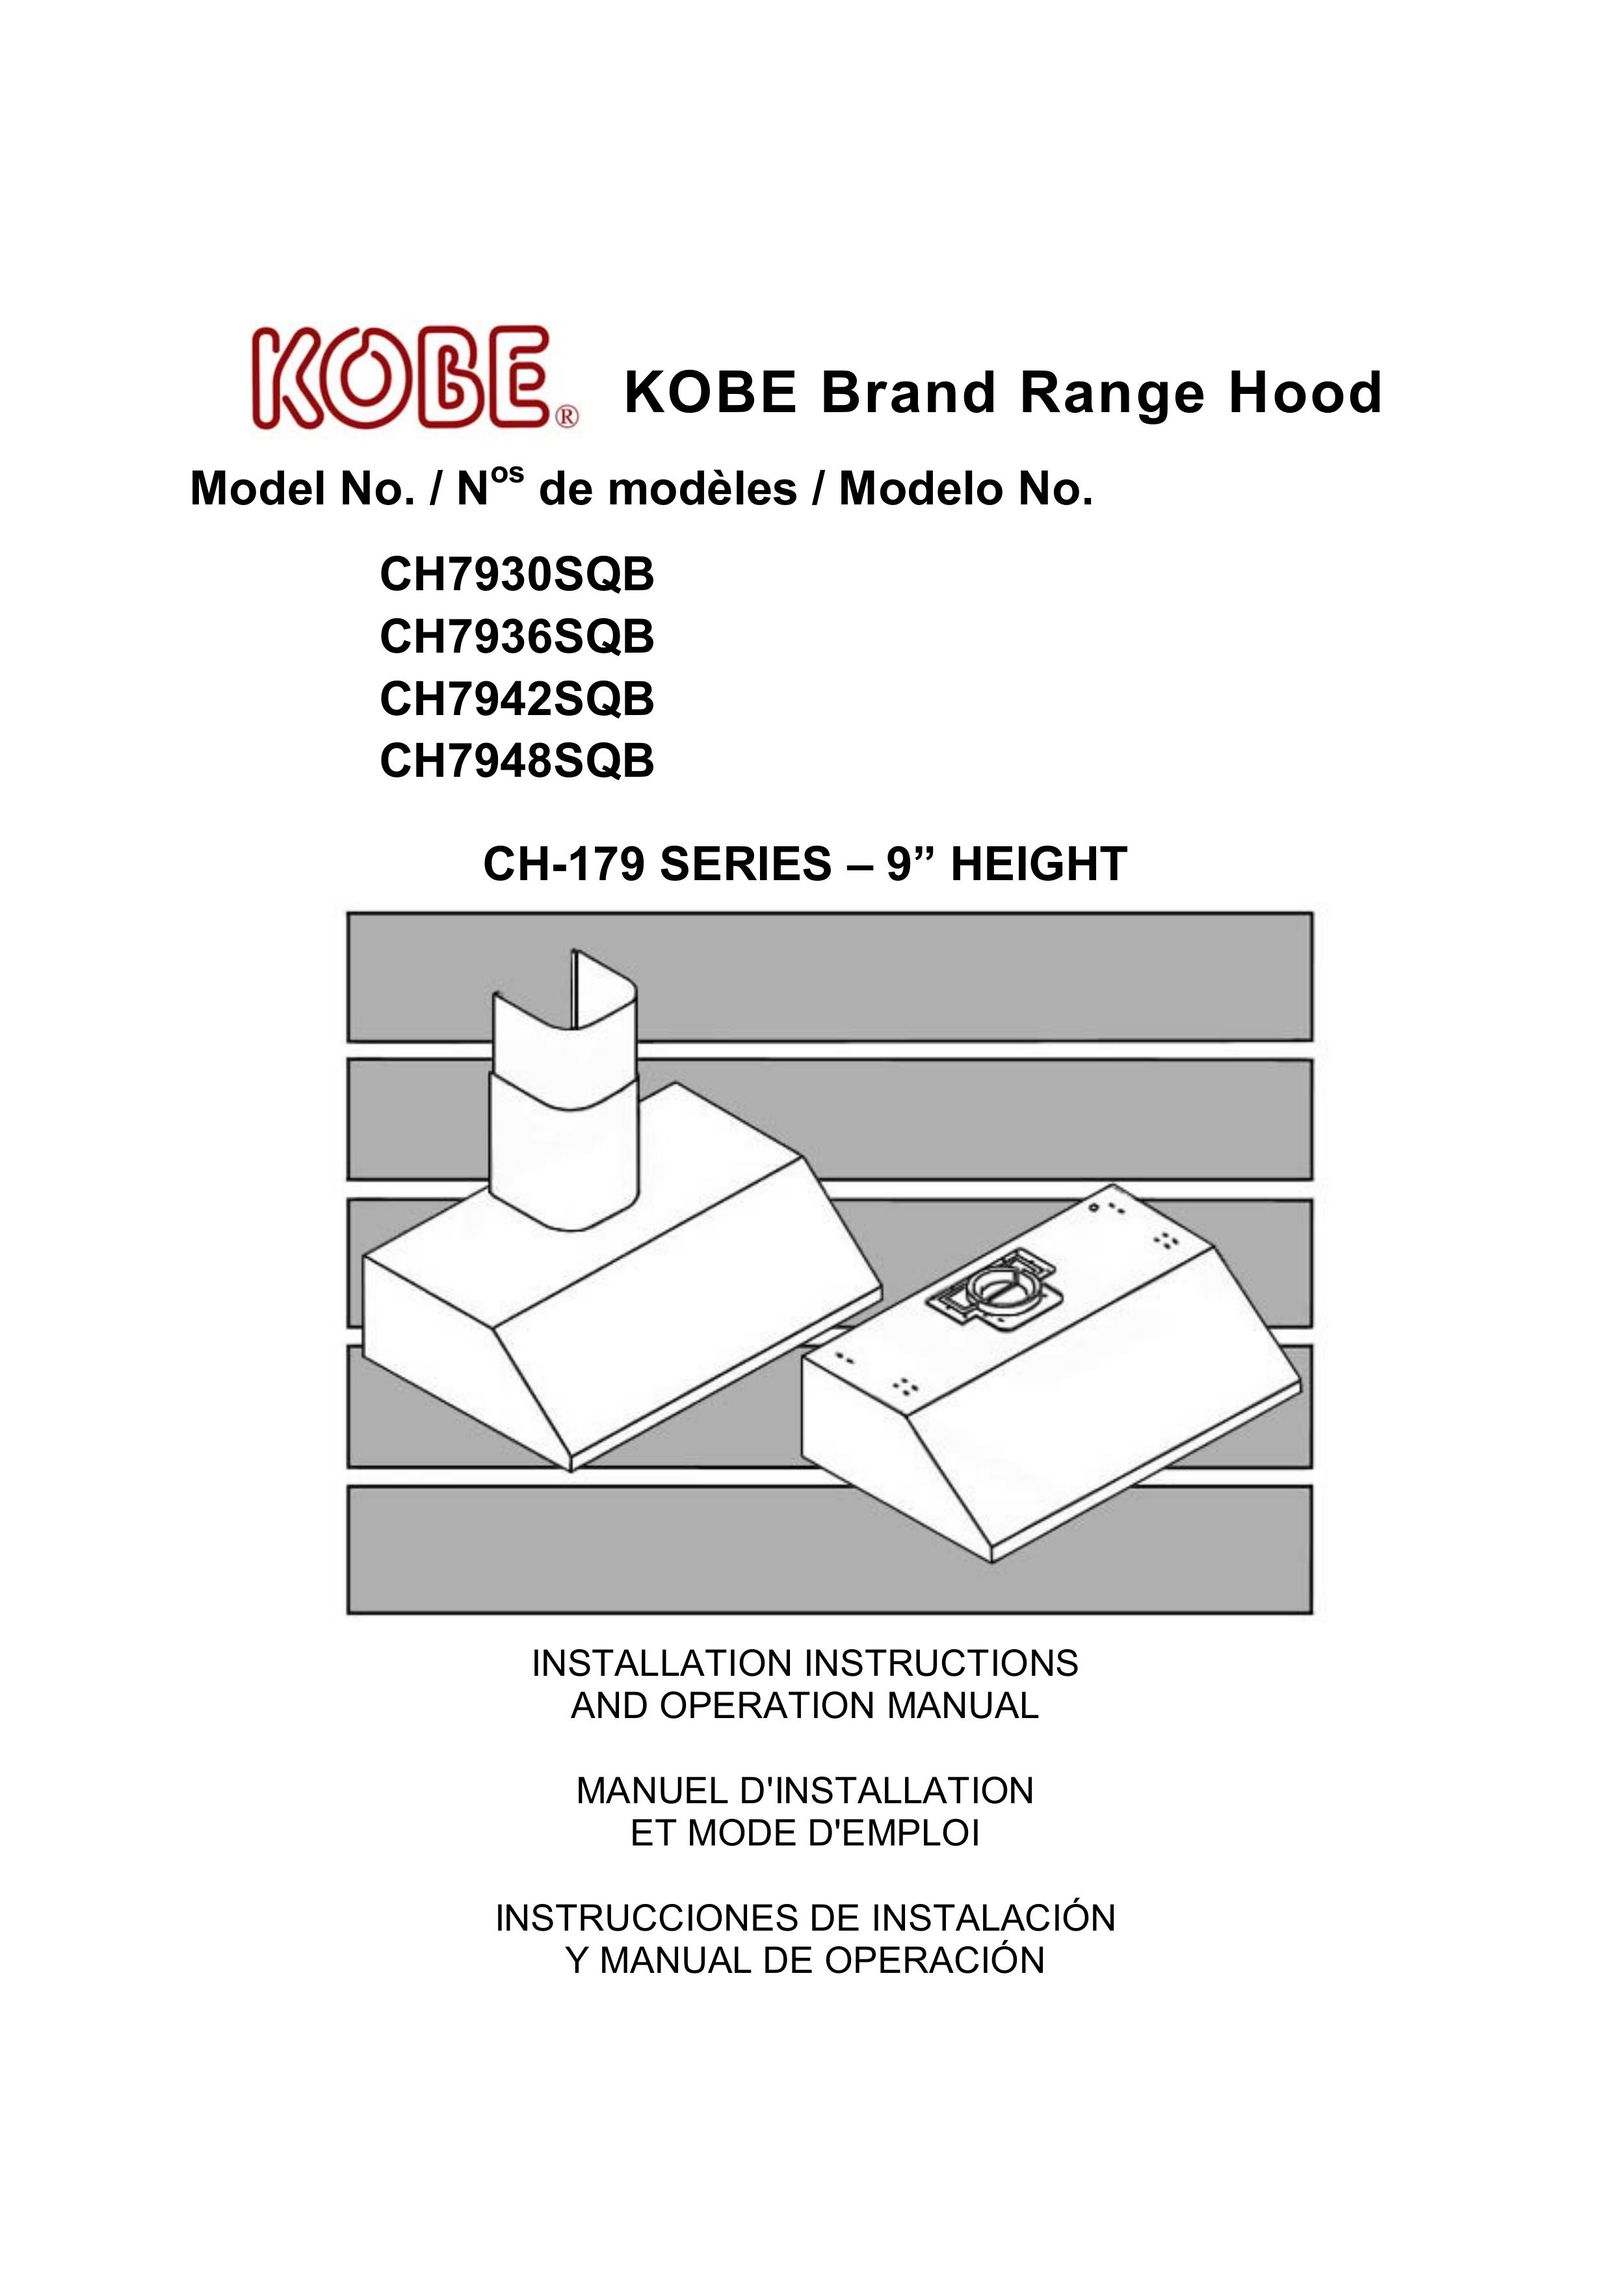 Kobe Range Hoods CH7936SQB Elliptical Trainer User Manual